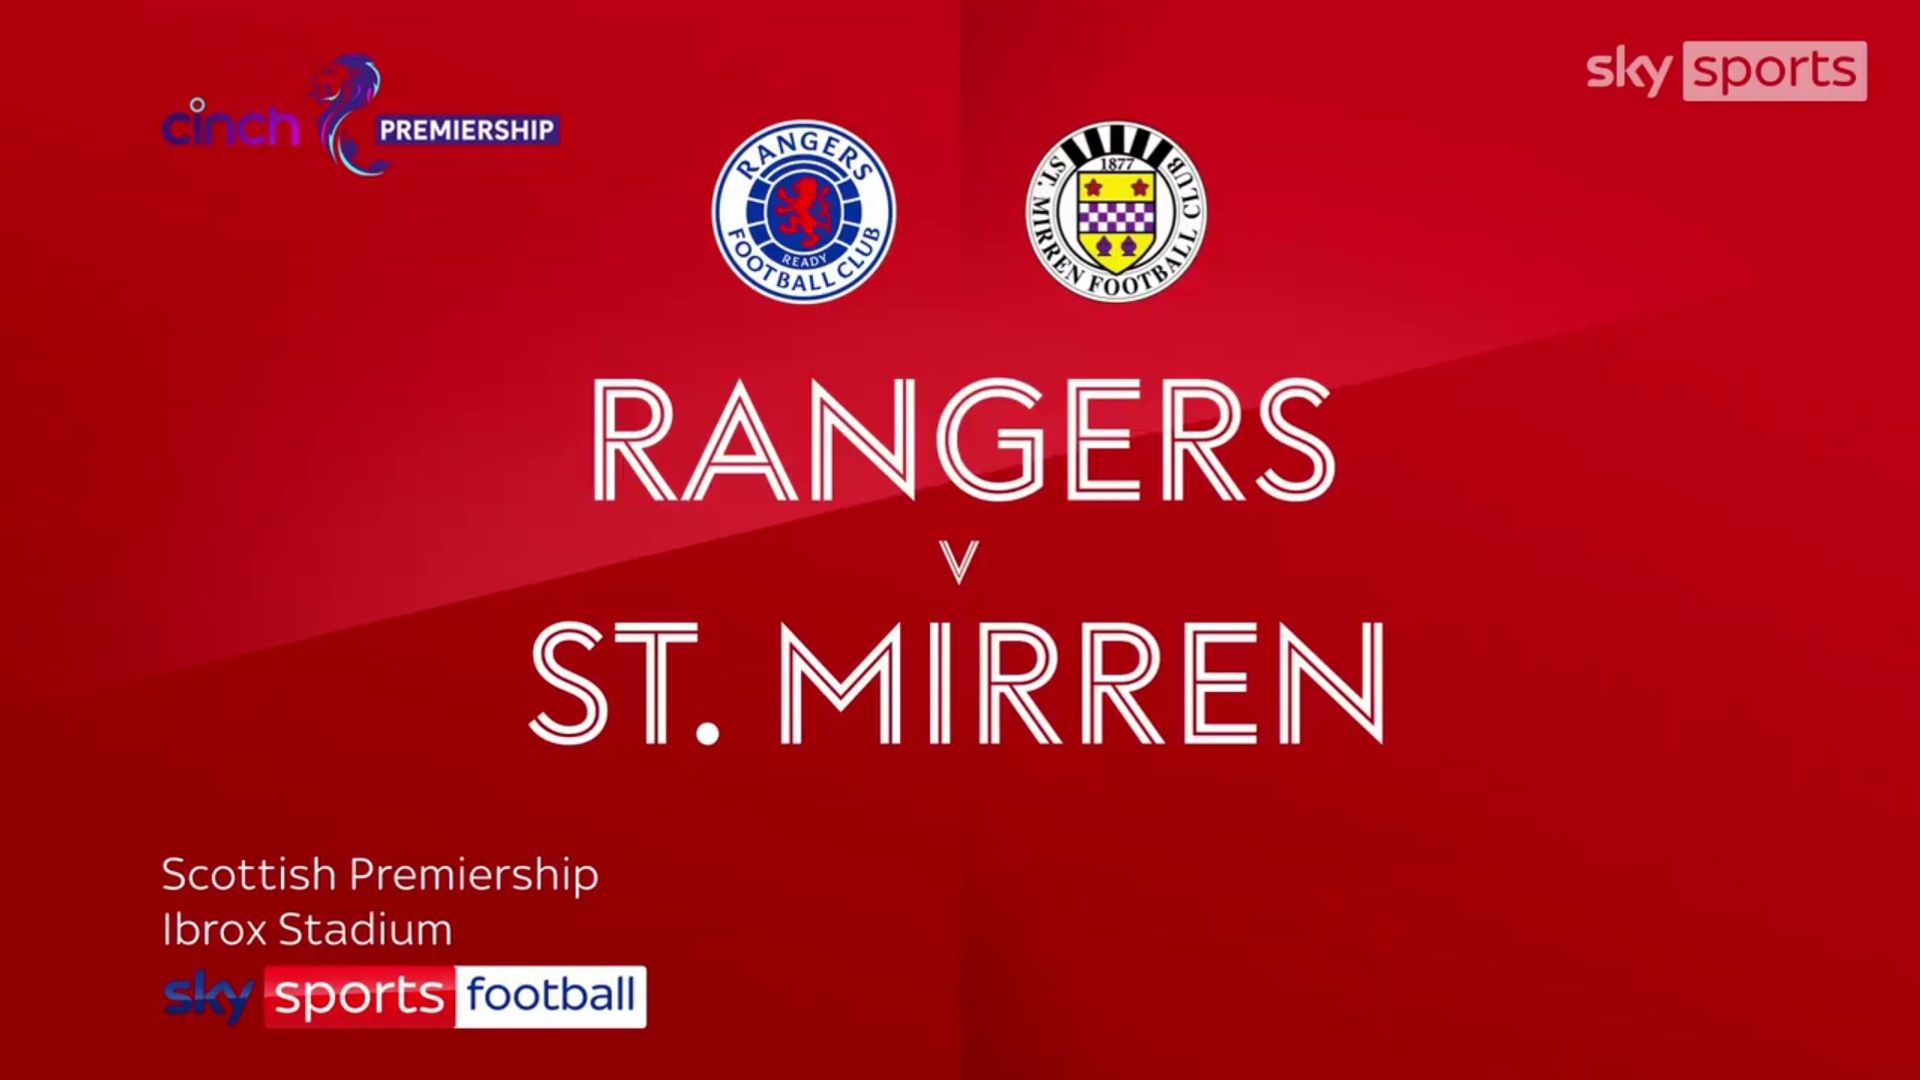 Rangers 5-2 St Mirren